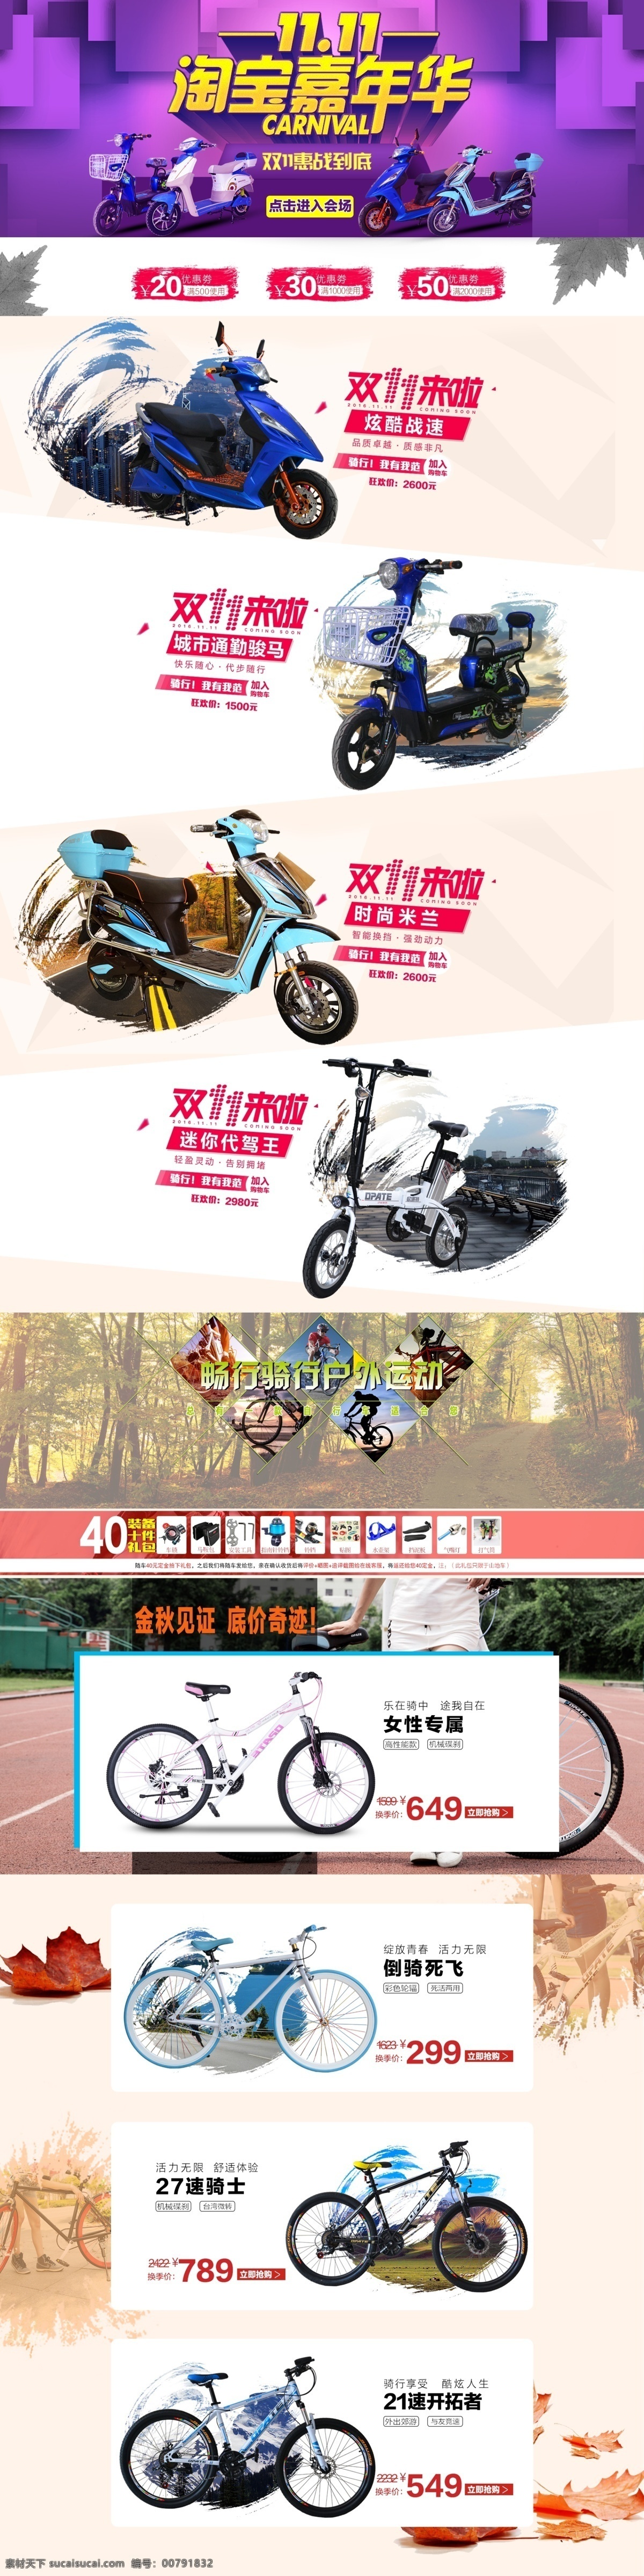 2017 高端 双十 淘宝 嘉年华 首页 模板 原创 电动车 电动 滑板车 自行车 制作